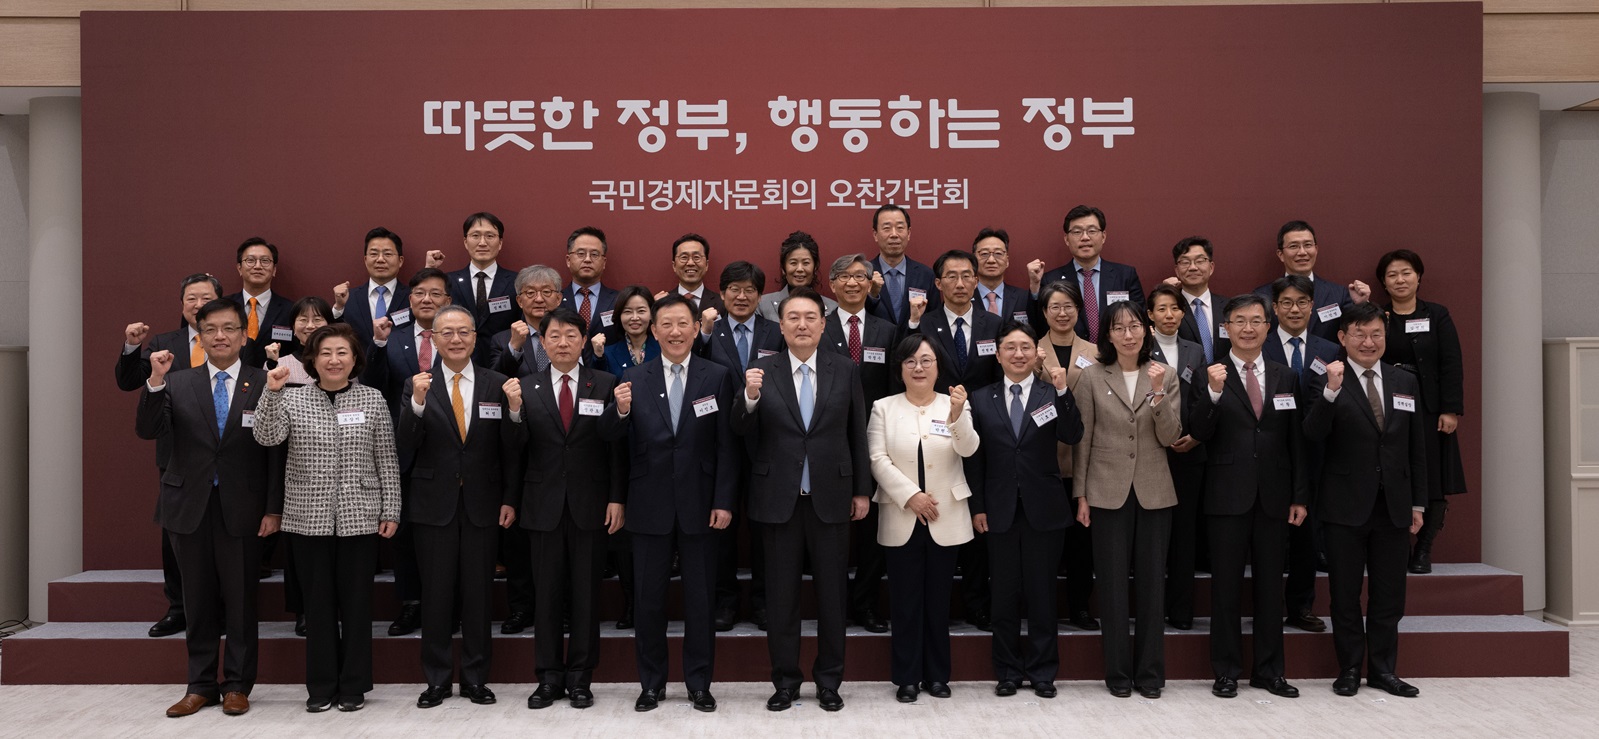 2021년도 국민경제자문회의, 한국경제학회 공동 정책포럼 배너 이미지